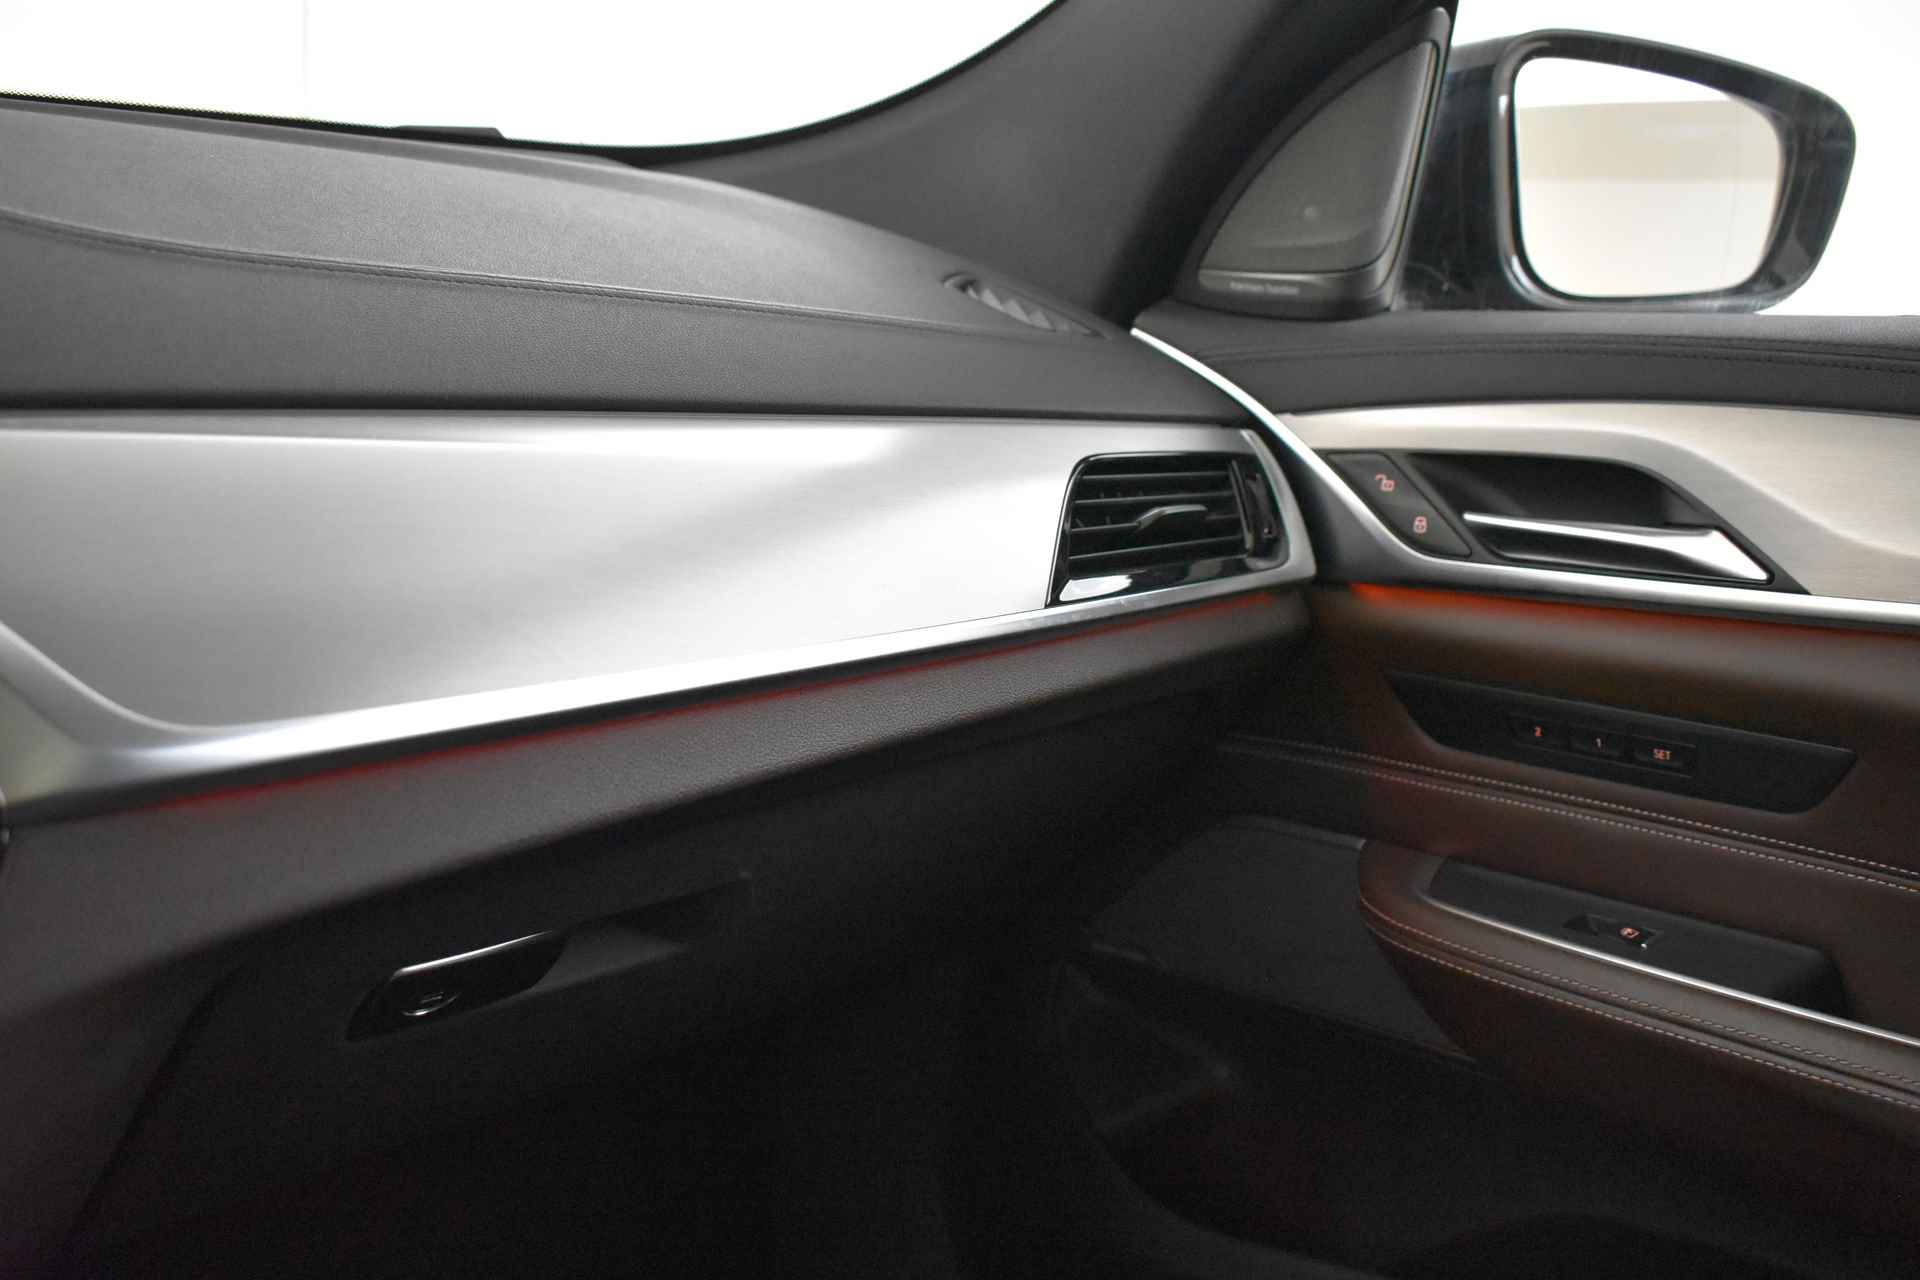 BMW 6 Serie Gran Turismo 640i High Executive M Sport Automaat / Panoramadak / Adaptieve LED / Active Cruise Control / Harman Kardon / Navigatie Professional / Comfort Access - 51/58